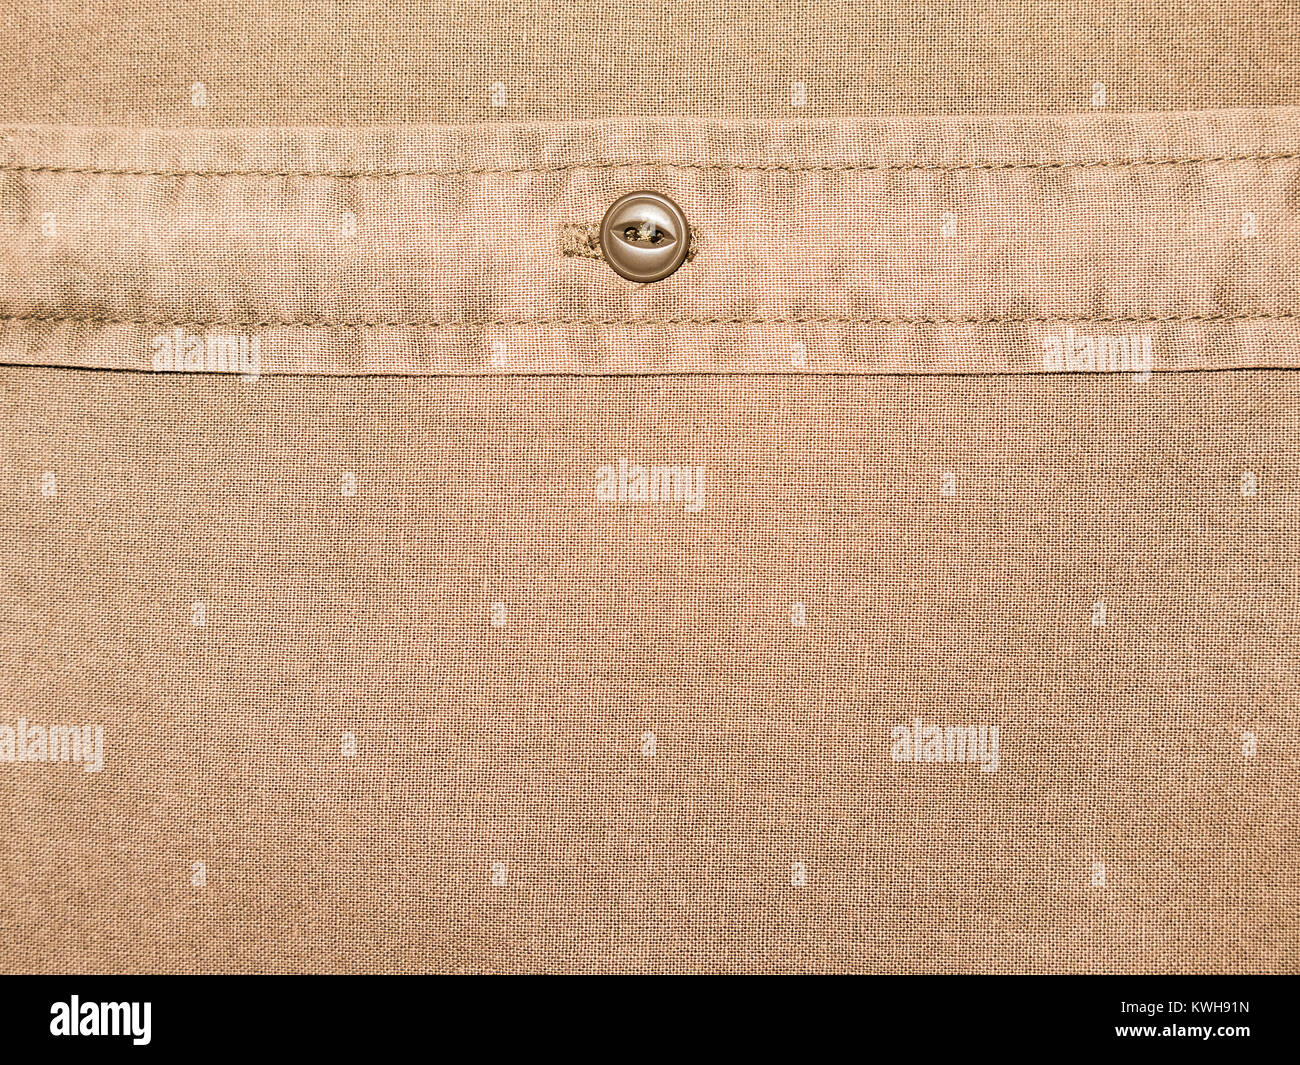 Camisa de algodón Marrón llano textura con botón de cerrar Foto de stock